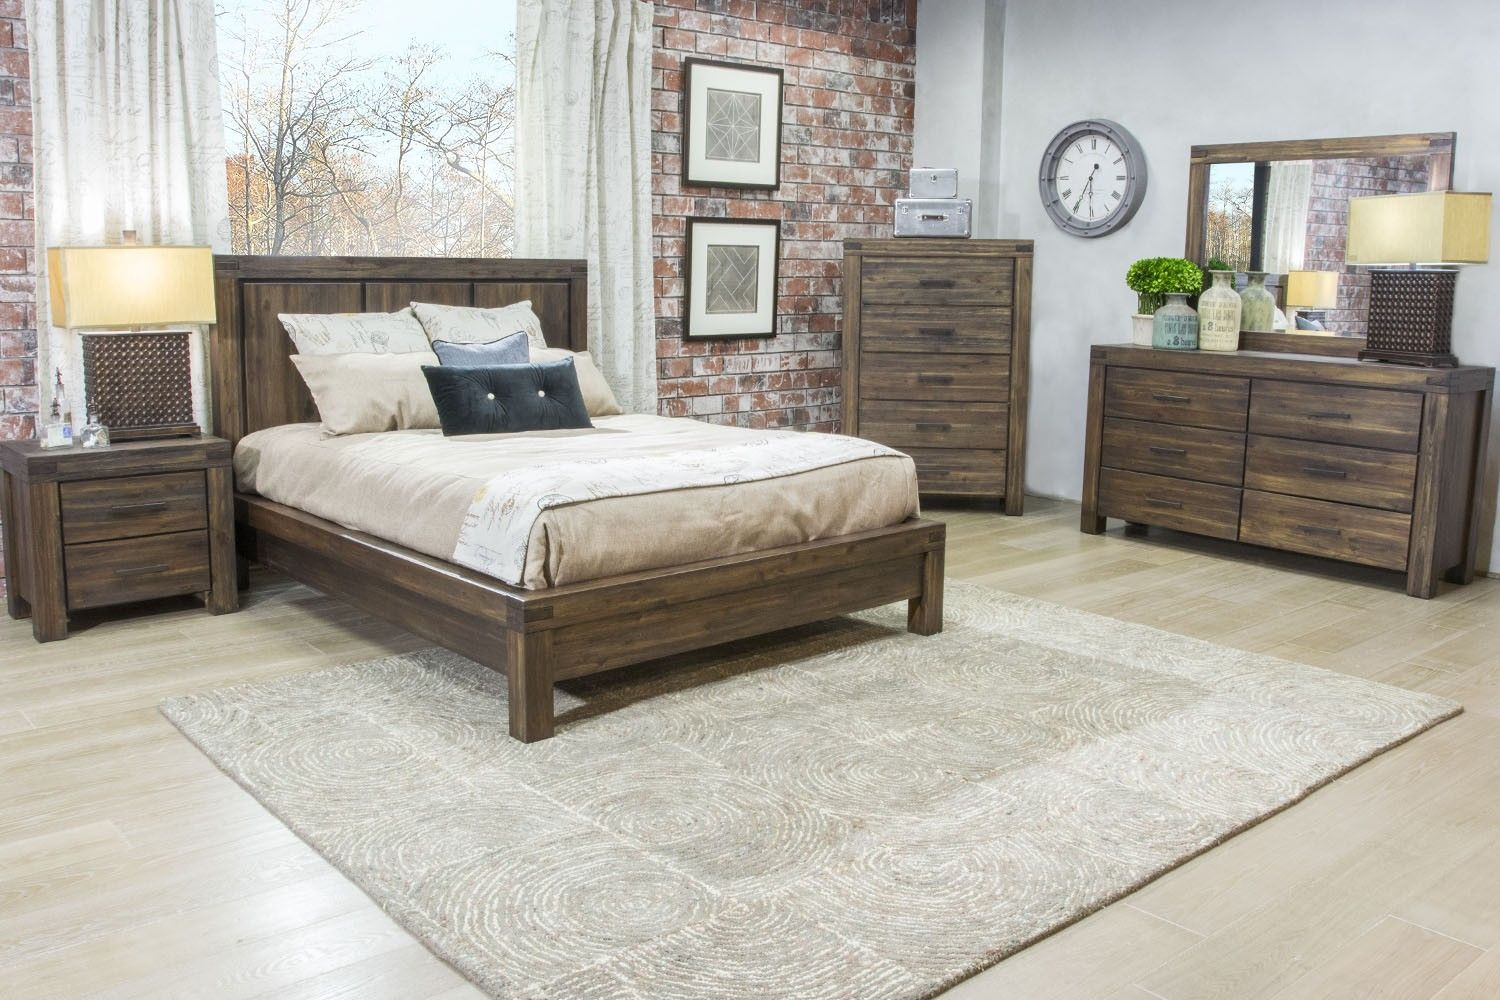 mor furniture for less bedroom set